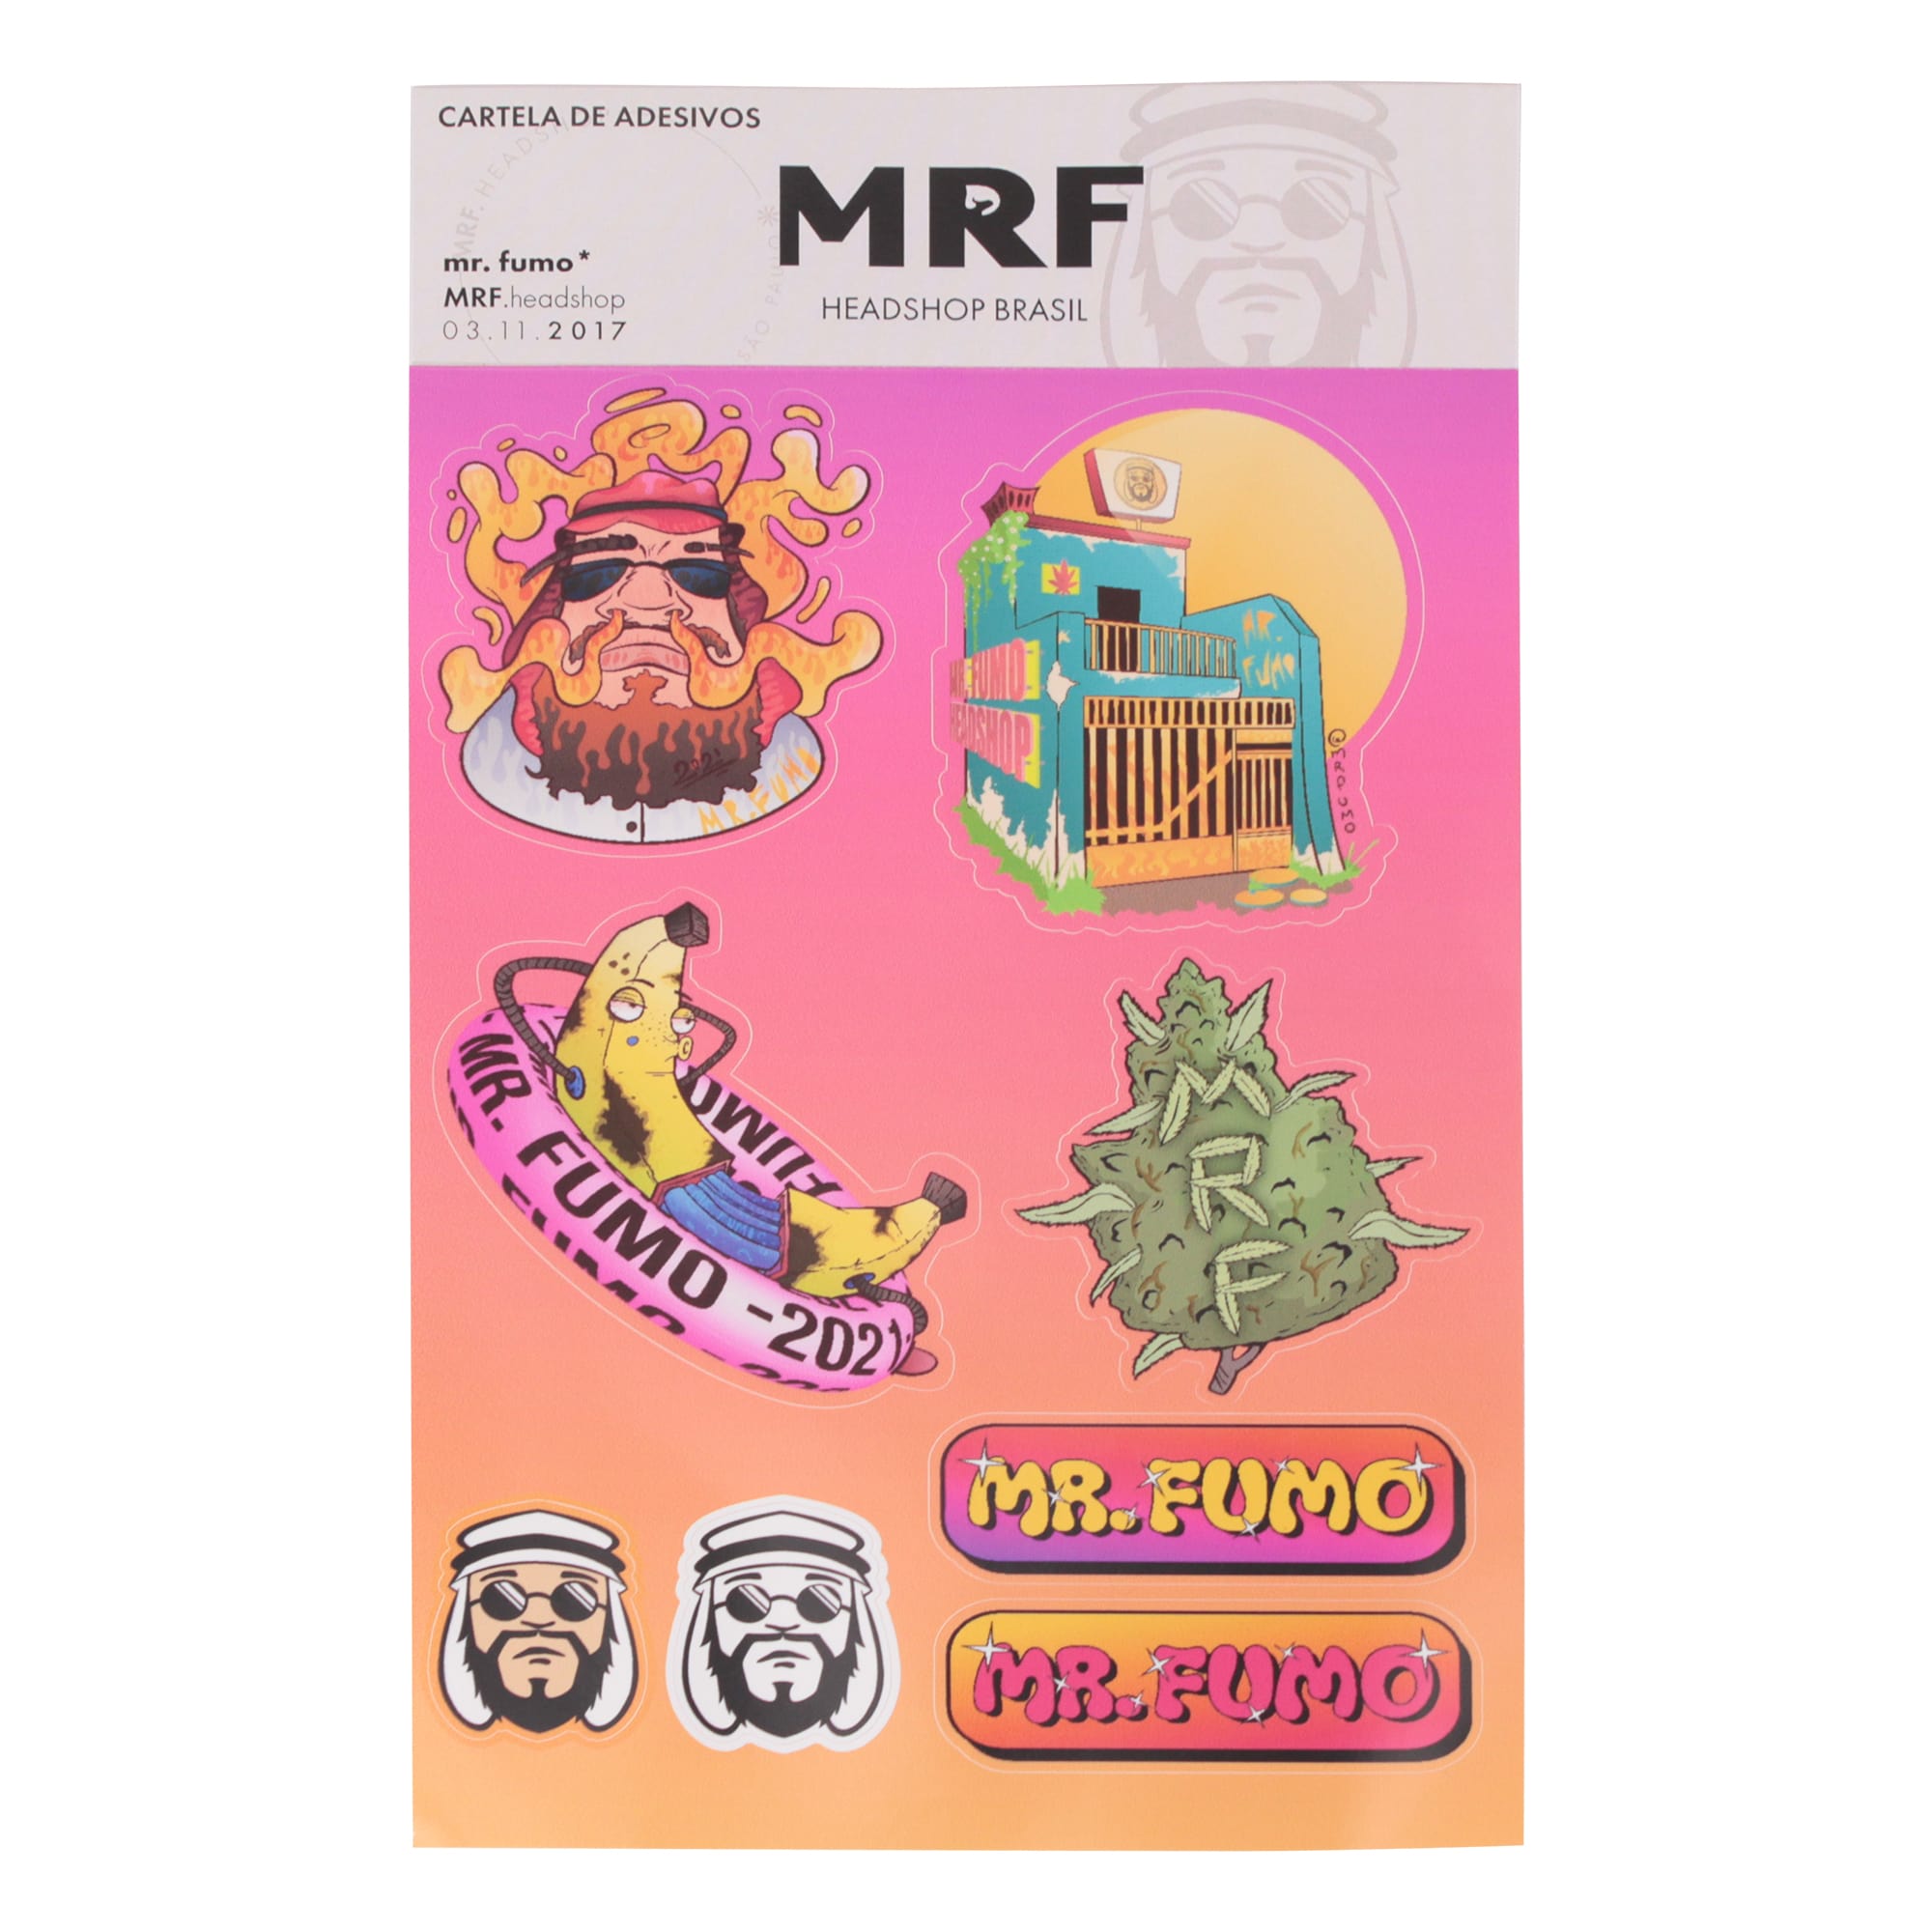 Cartela de Adesivos MRF - Mr. Fumo